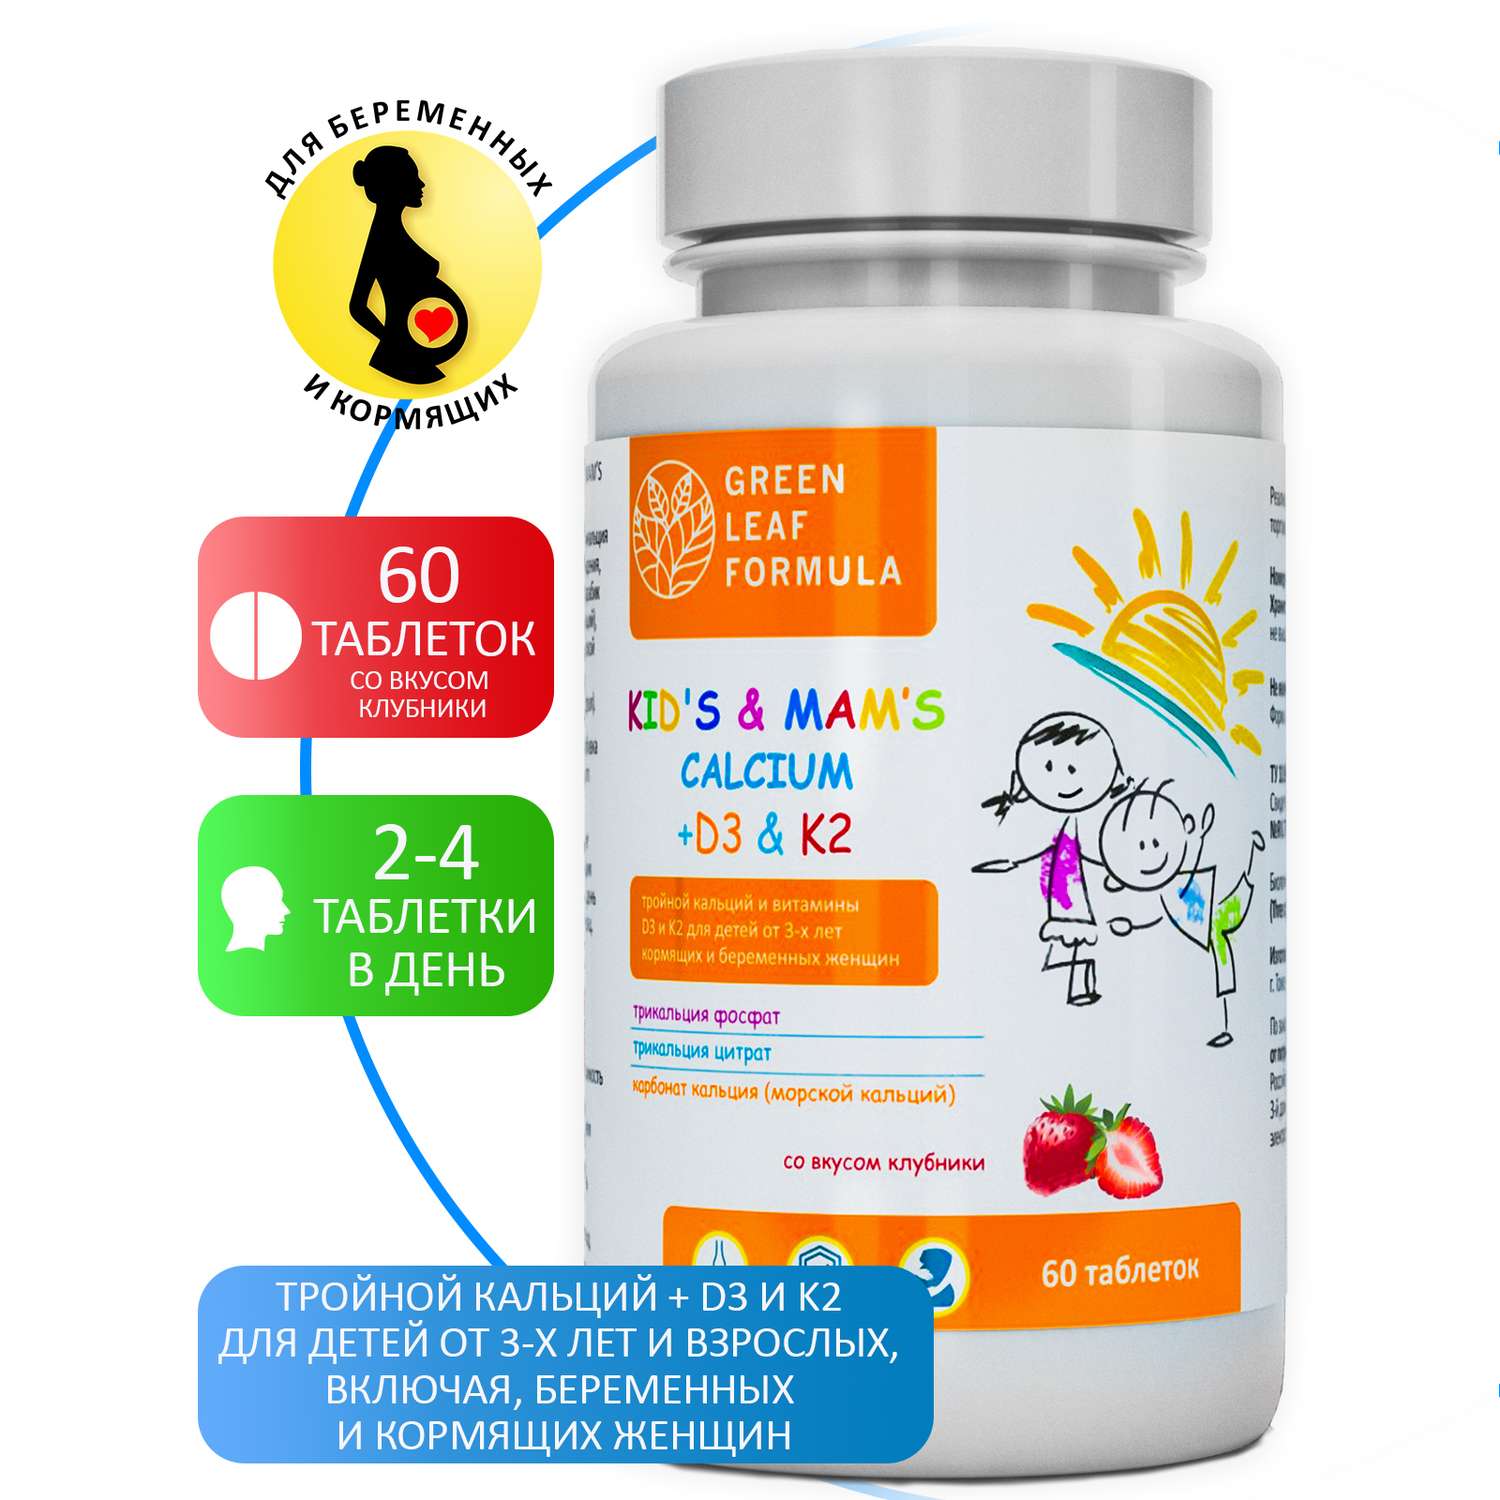 Кальций Д3 К2 для детей Green Leaf Formula витамины для костей и иммунитета детские мультивитамины - фото 2